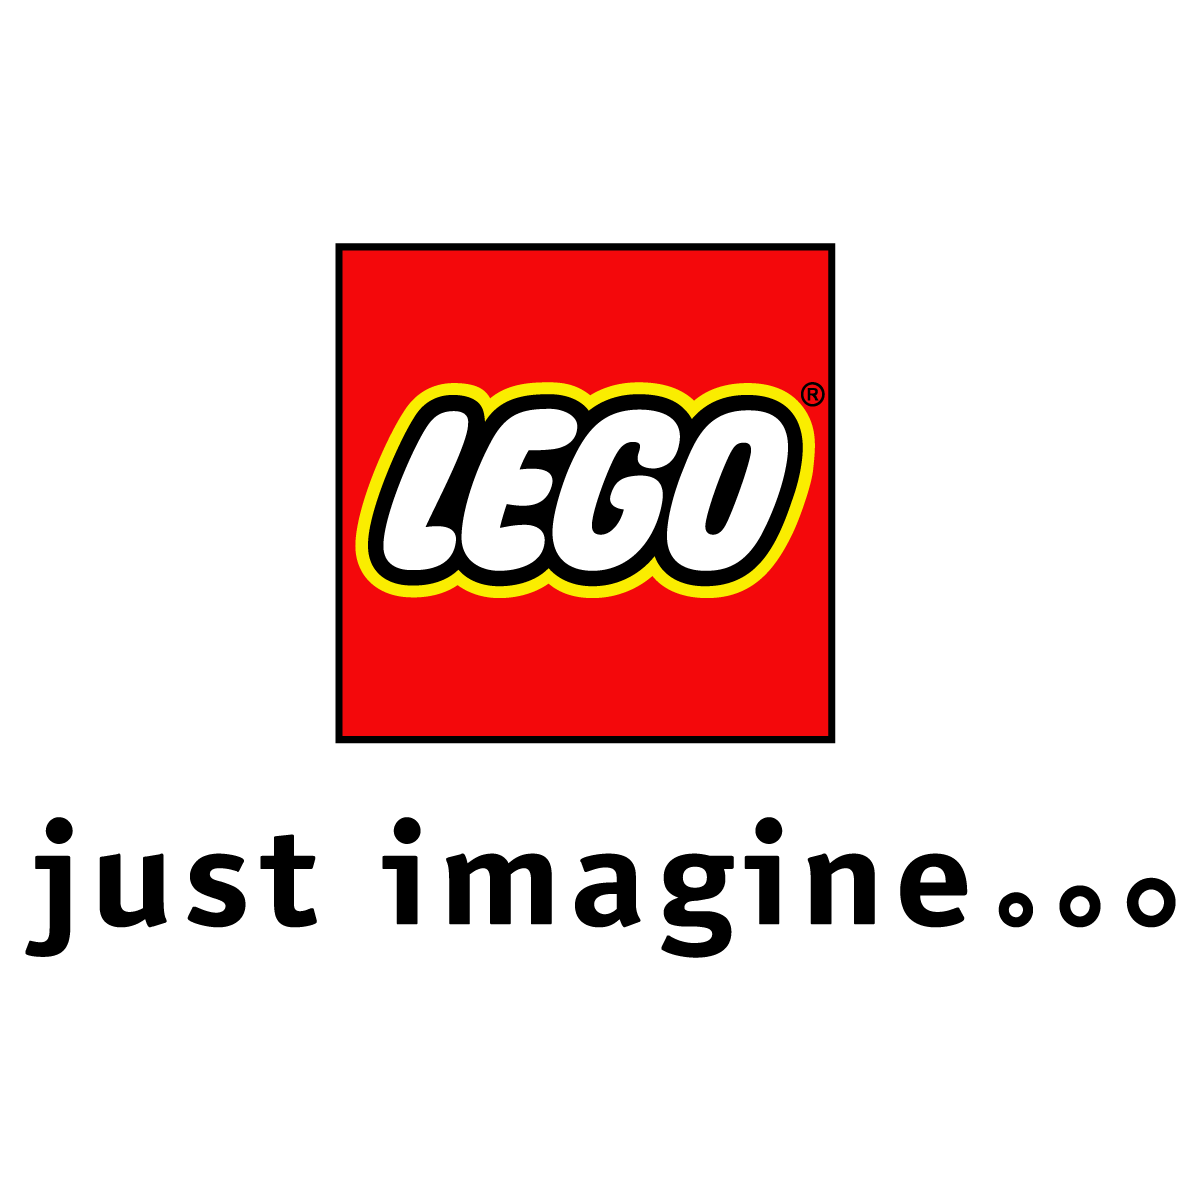 Lego Logo Transparent